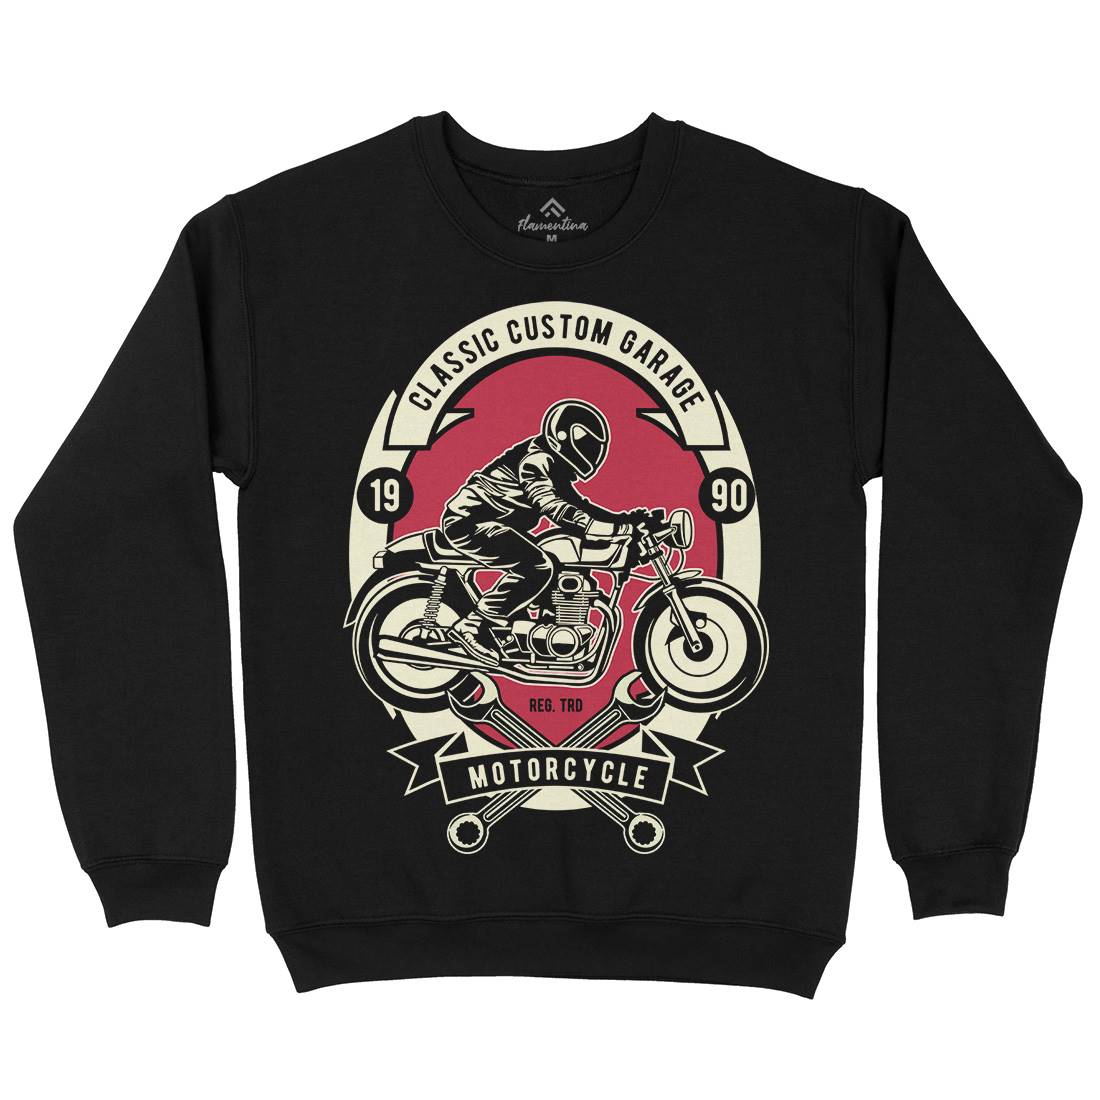 Classic Custom Garage Kids Crew Neck Sweatshirt Motorcycles D519